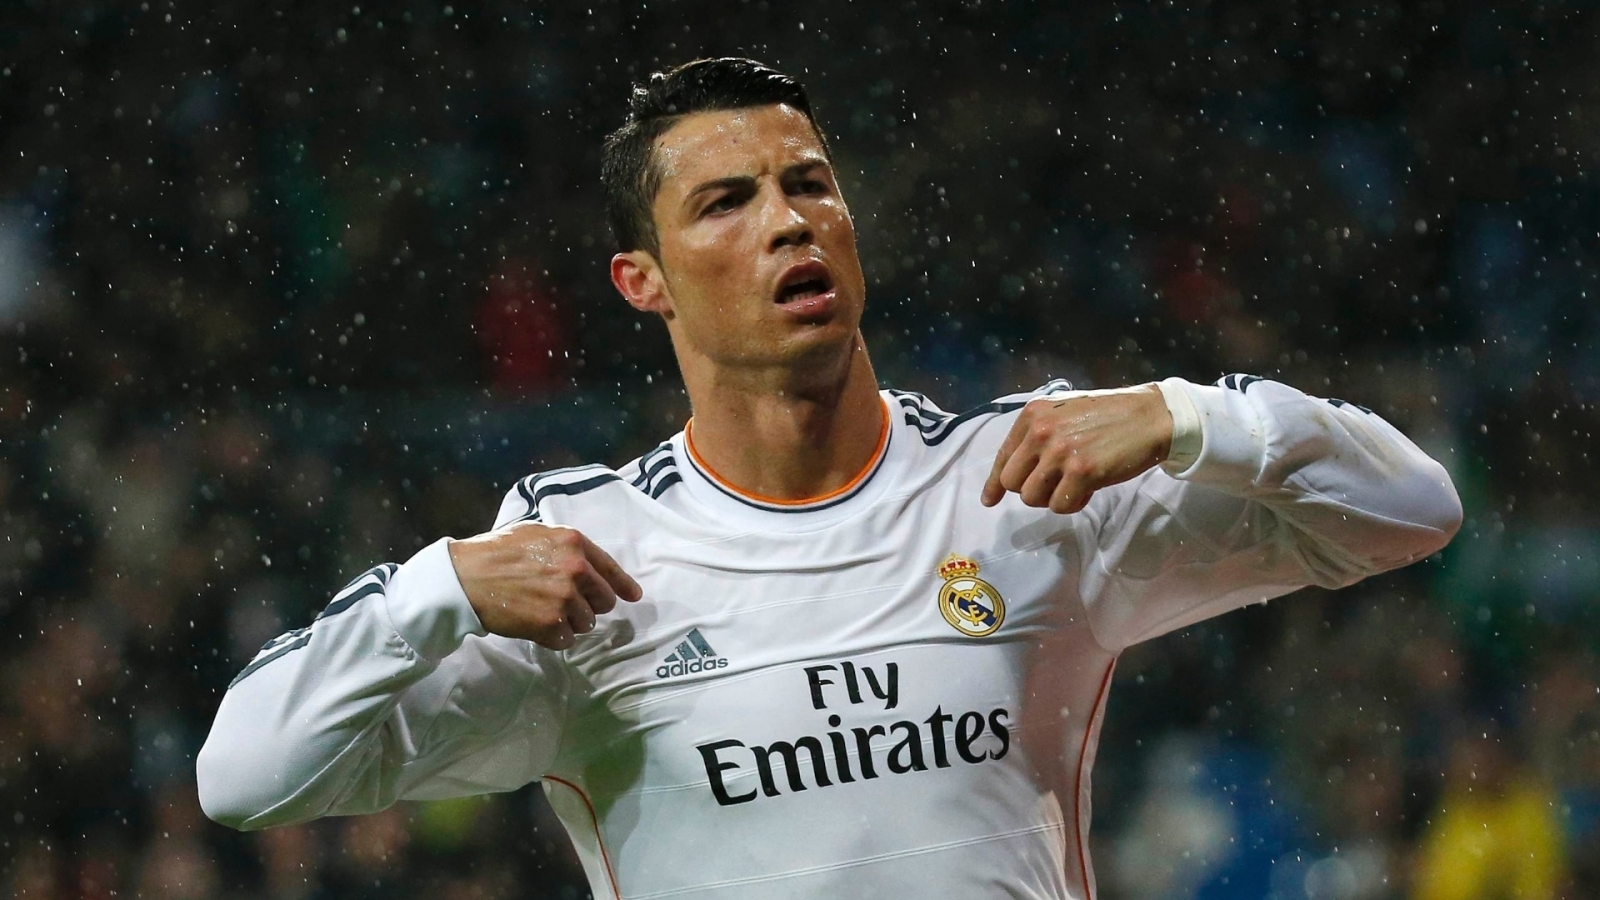 Cristiano Ronaldo in Rain for 1600 x 900 HDTV resolution